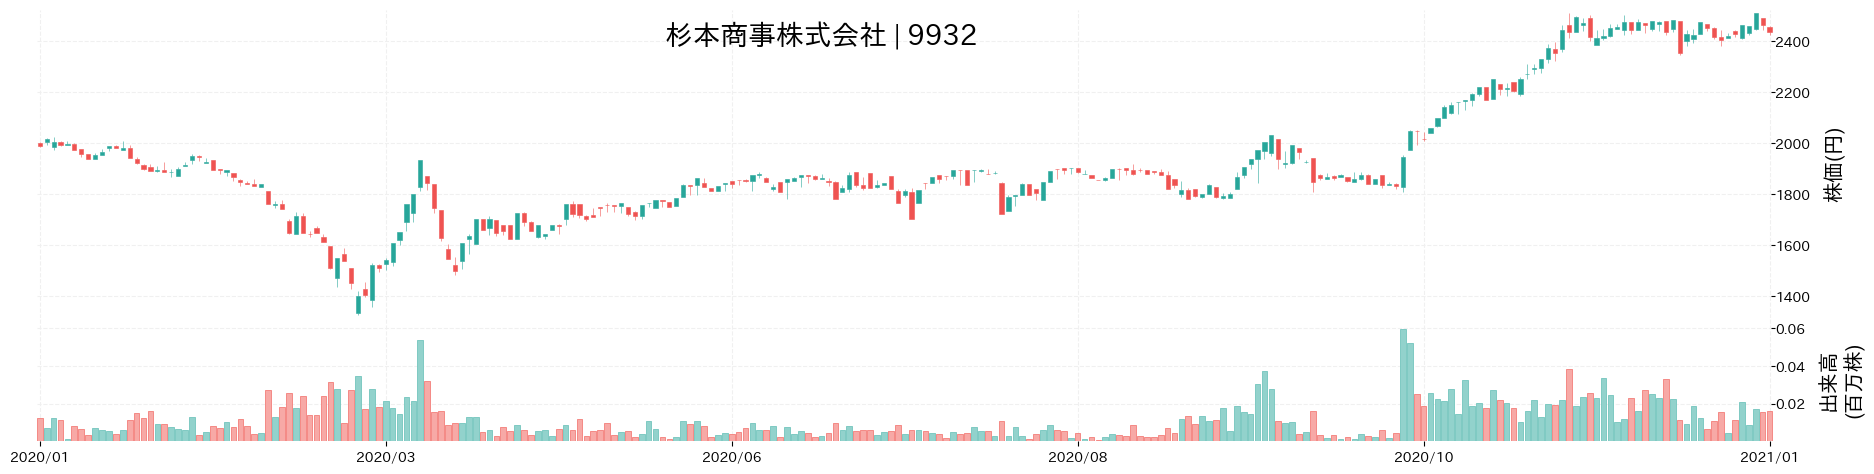 杉本商事の株価推移(2020)